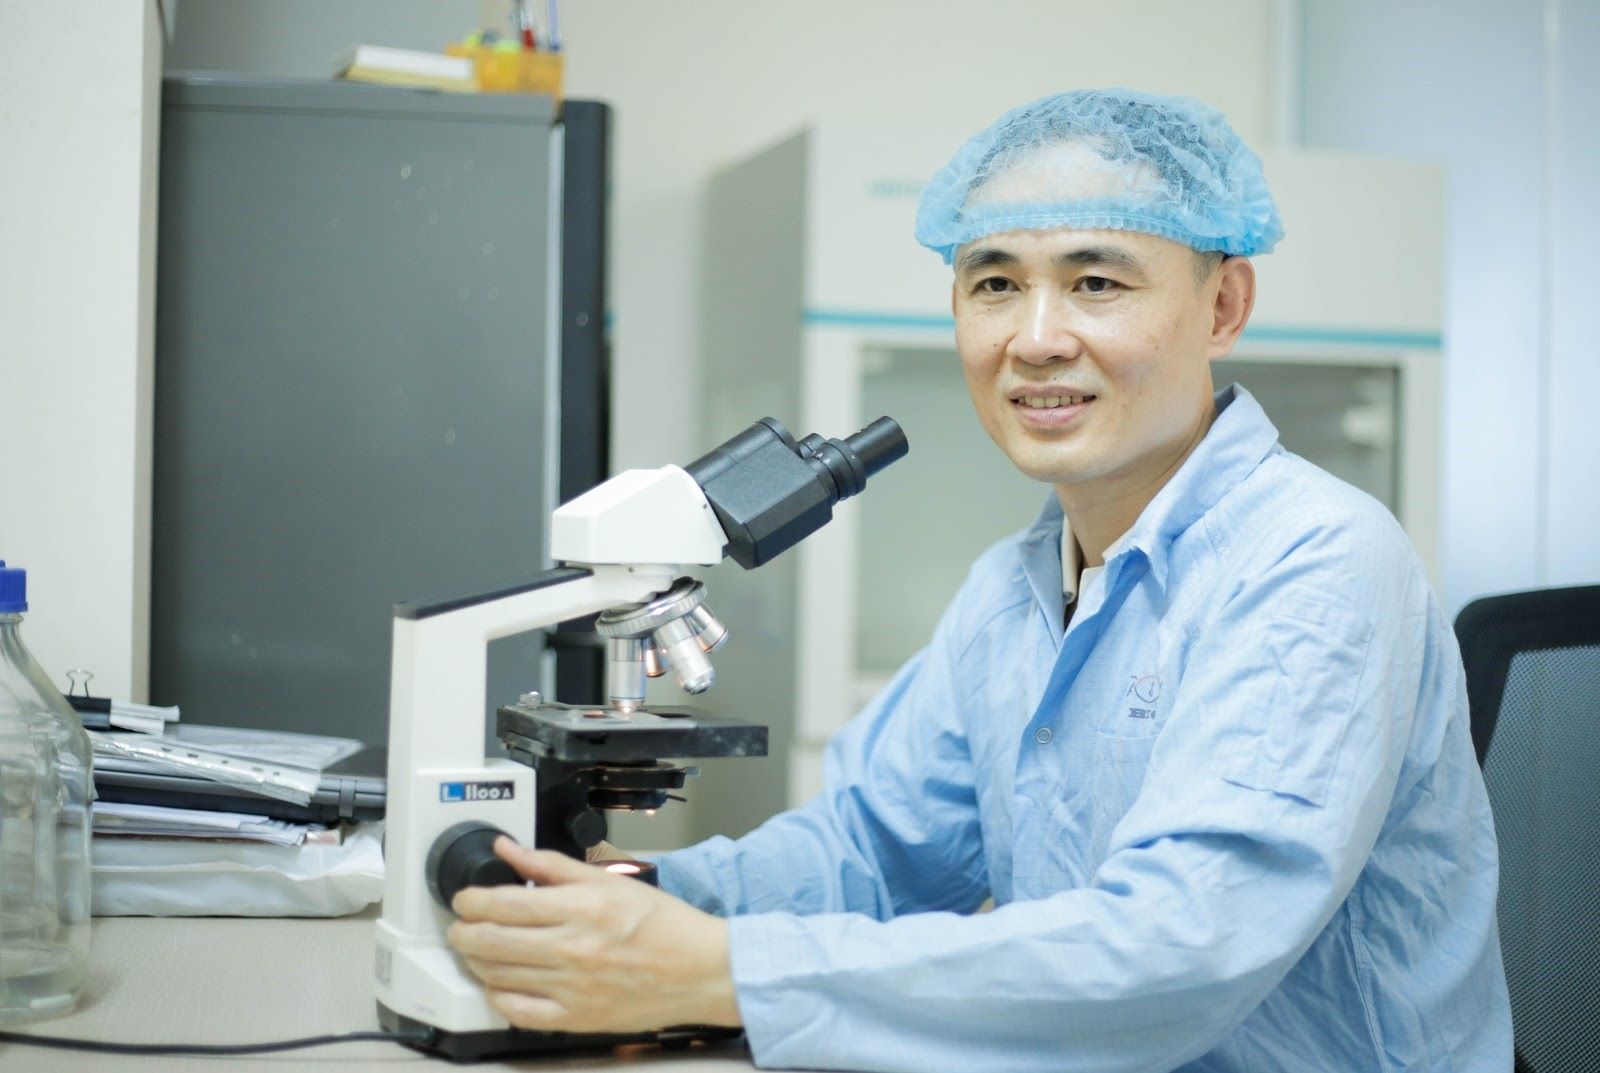 Chân dung TS. Nguyễn Hòa Anh - Người nghiên cứu ra công nghệ bào tử lợi khuẩn của Preg-mom